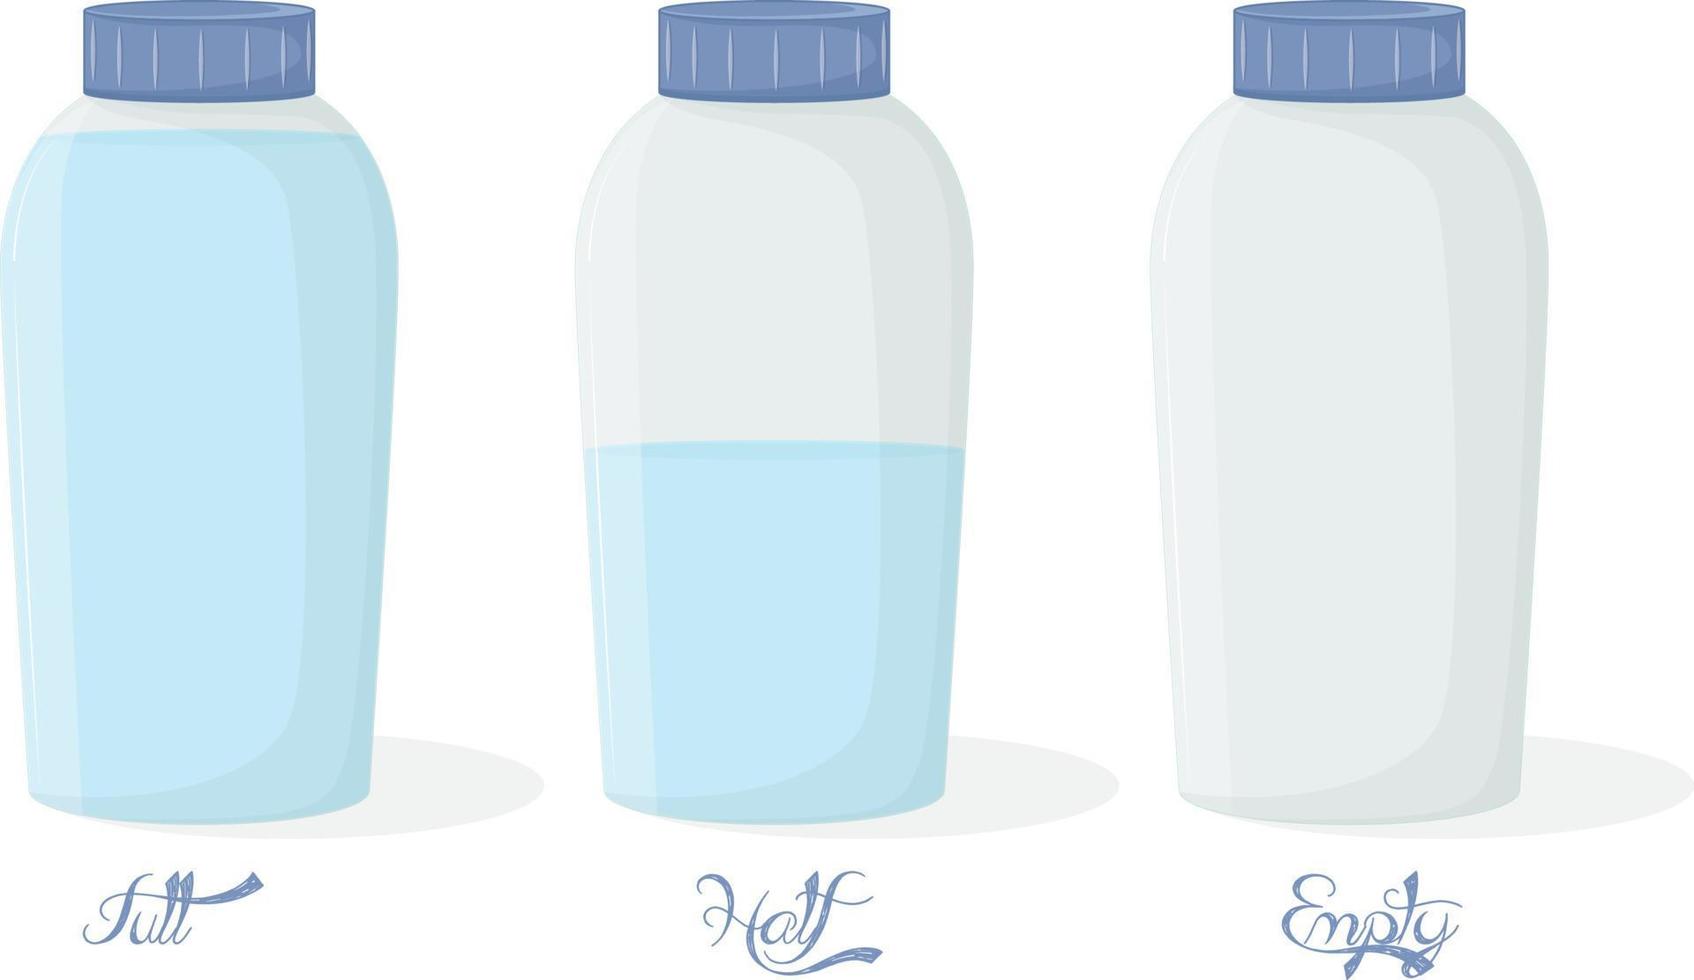 drei arten von glasflaschen isoliert vektor voll halb und leer